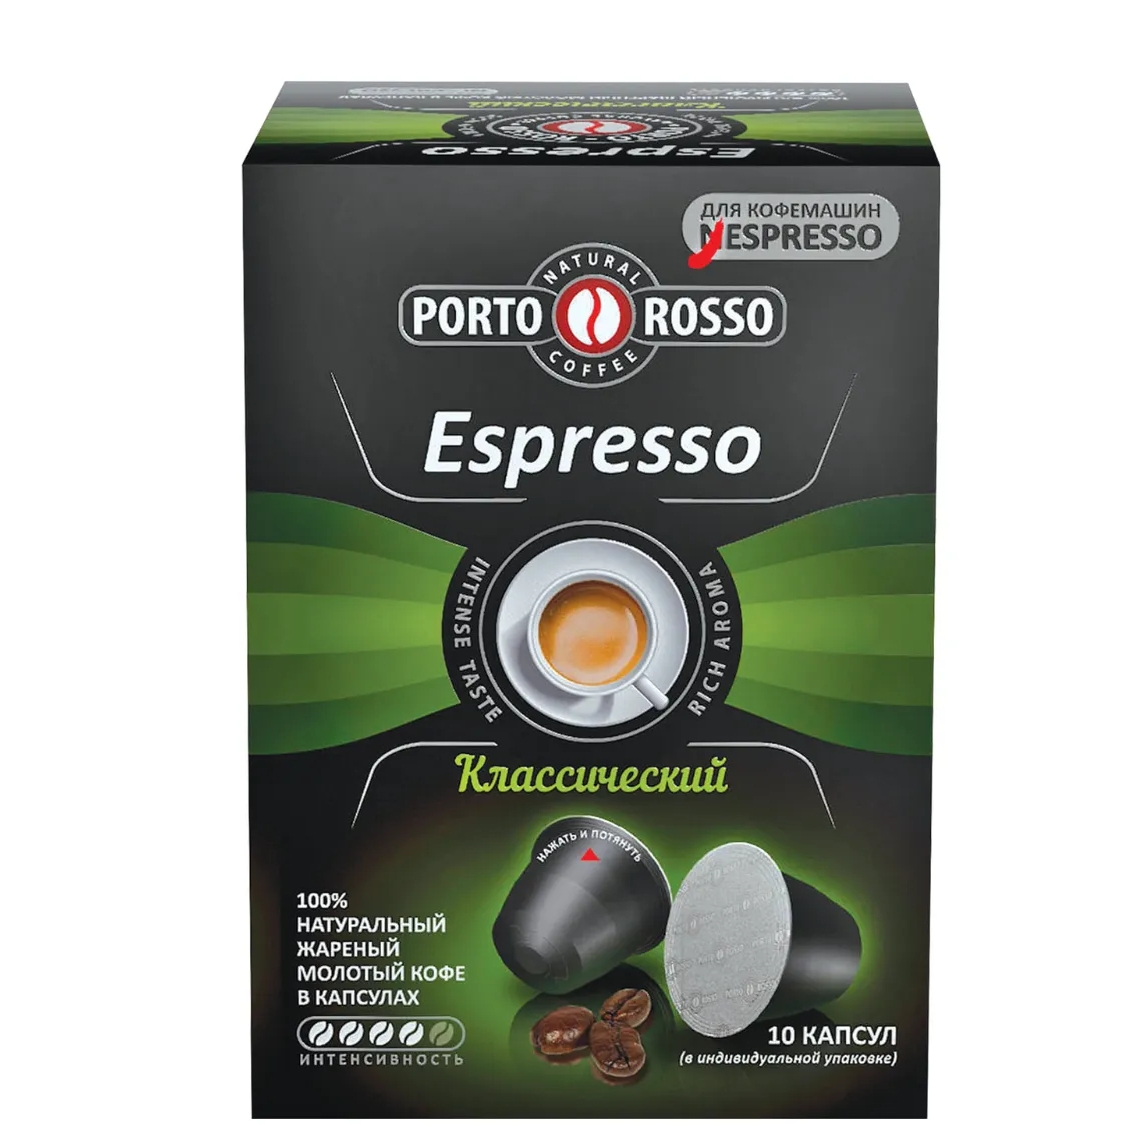 Кофе в капсулах Porto Rosso Espresso Классический, 10х5 г кофе растворимый porto rosso oro 90 г